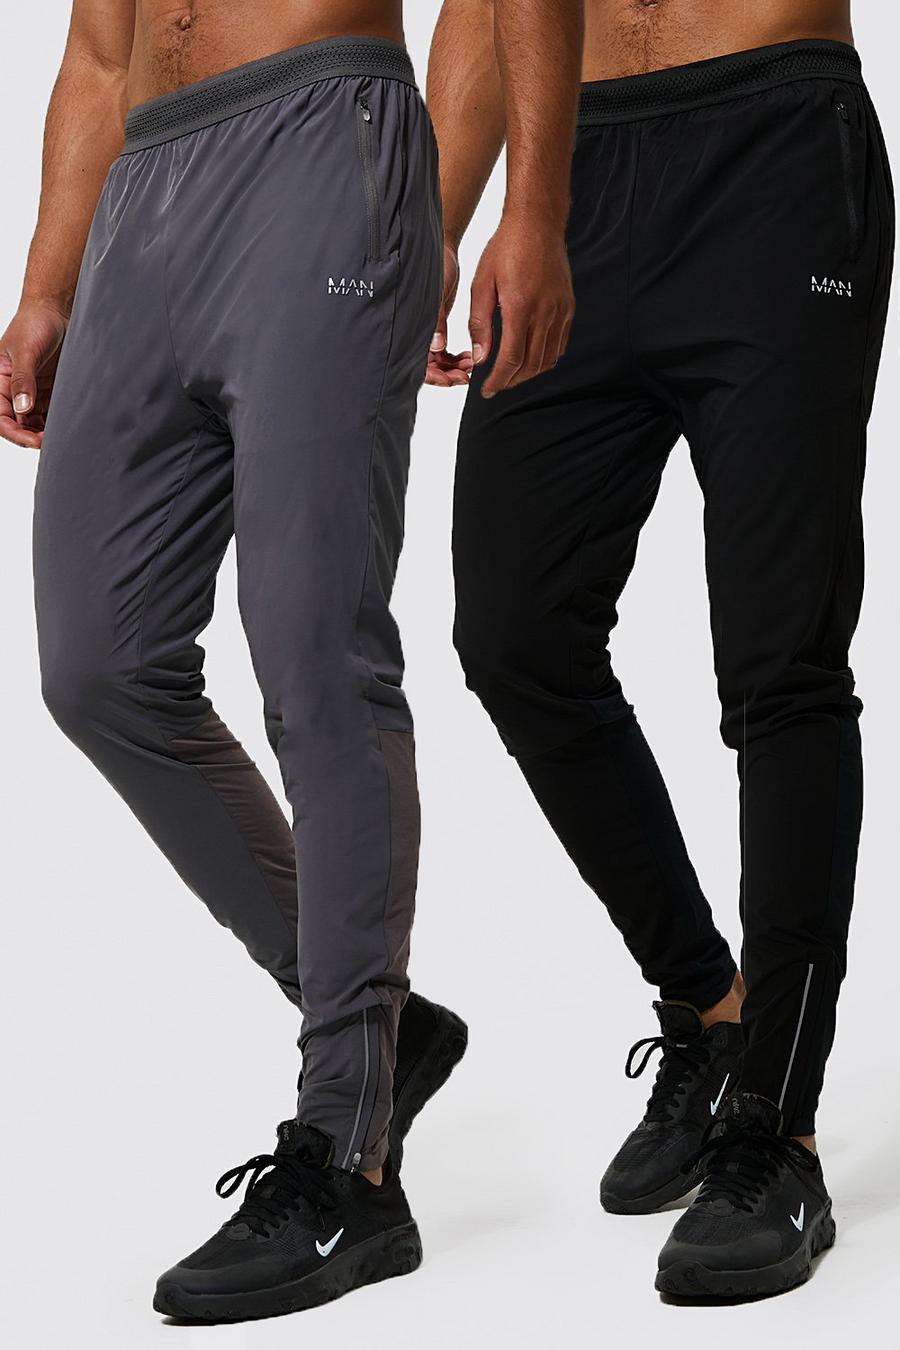 Pantaloni tuta Tall leggeri Man Active Gym - set di 2 paia, Black negro image number 1